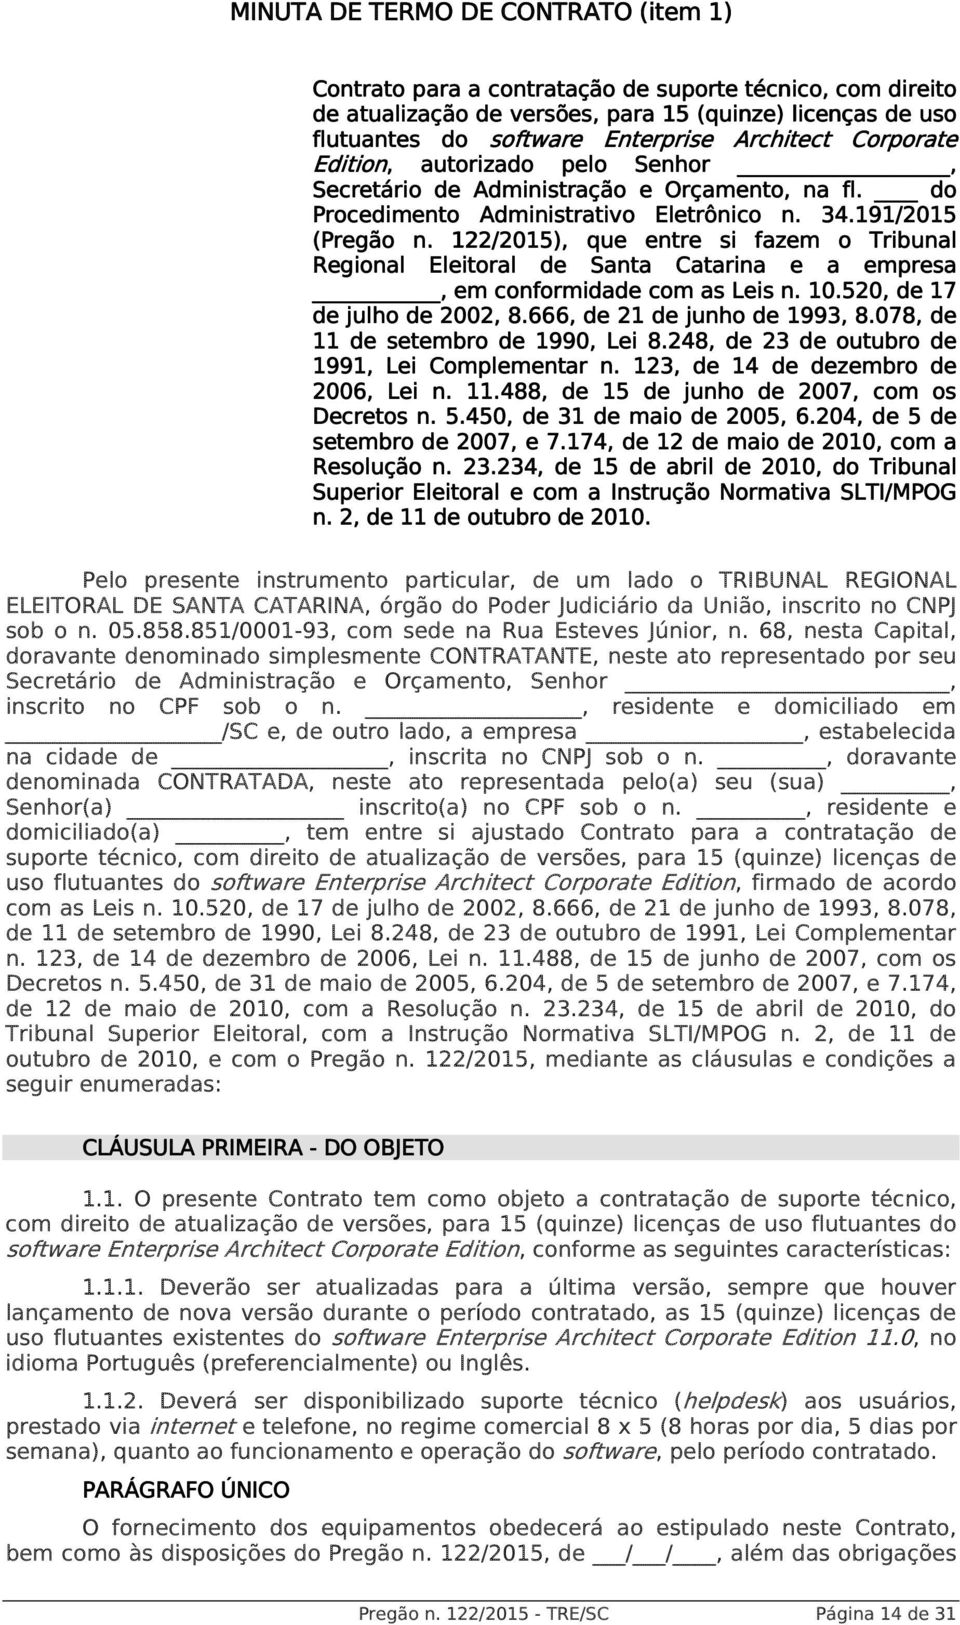 122/2015),, que entre si fazem o Tribunal Regional Eleitoral de Santa Catarina e a empresa, em conformidade com as Leis n. 10.520, de 17 de julho de 2002, 8.666, de 21 de junho de 1993, 8.